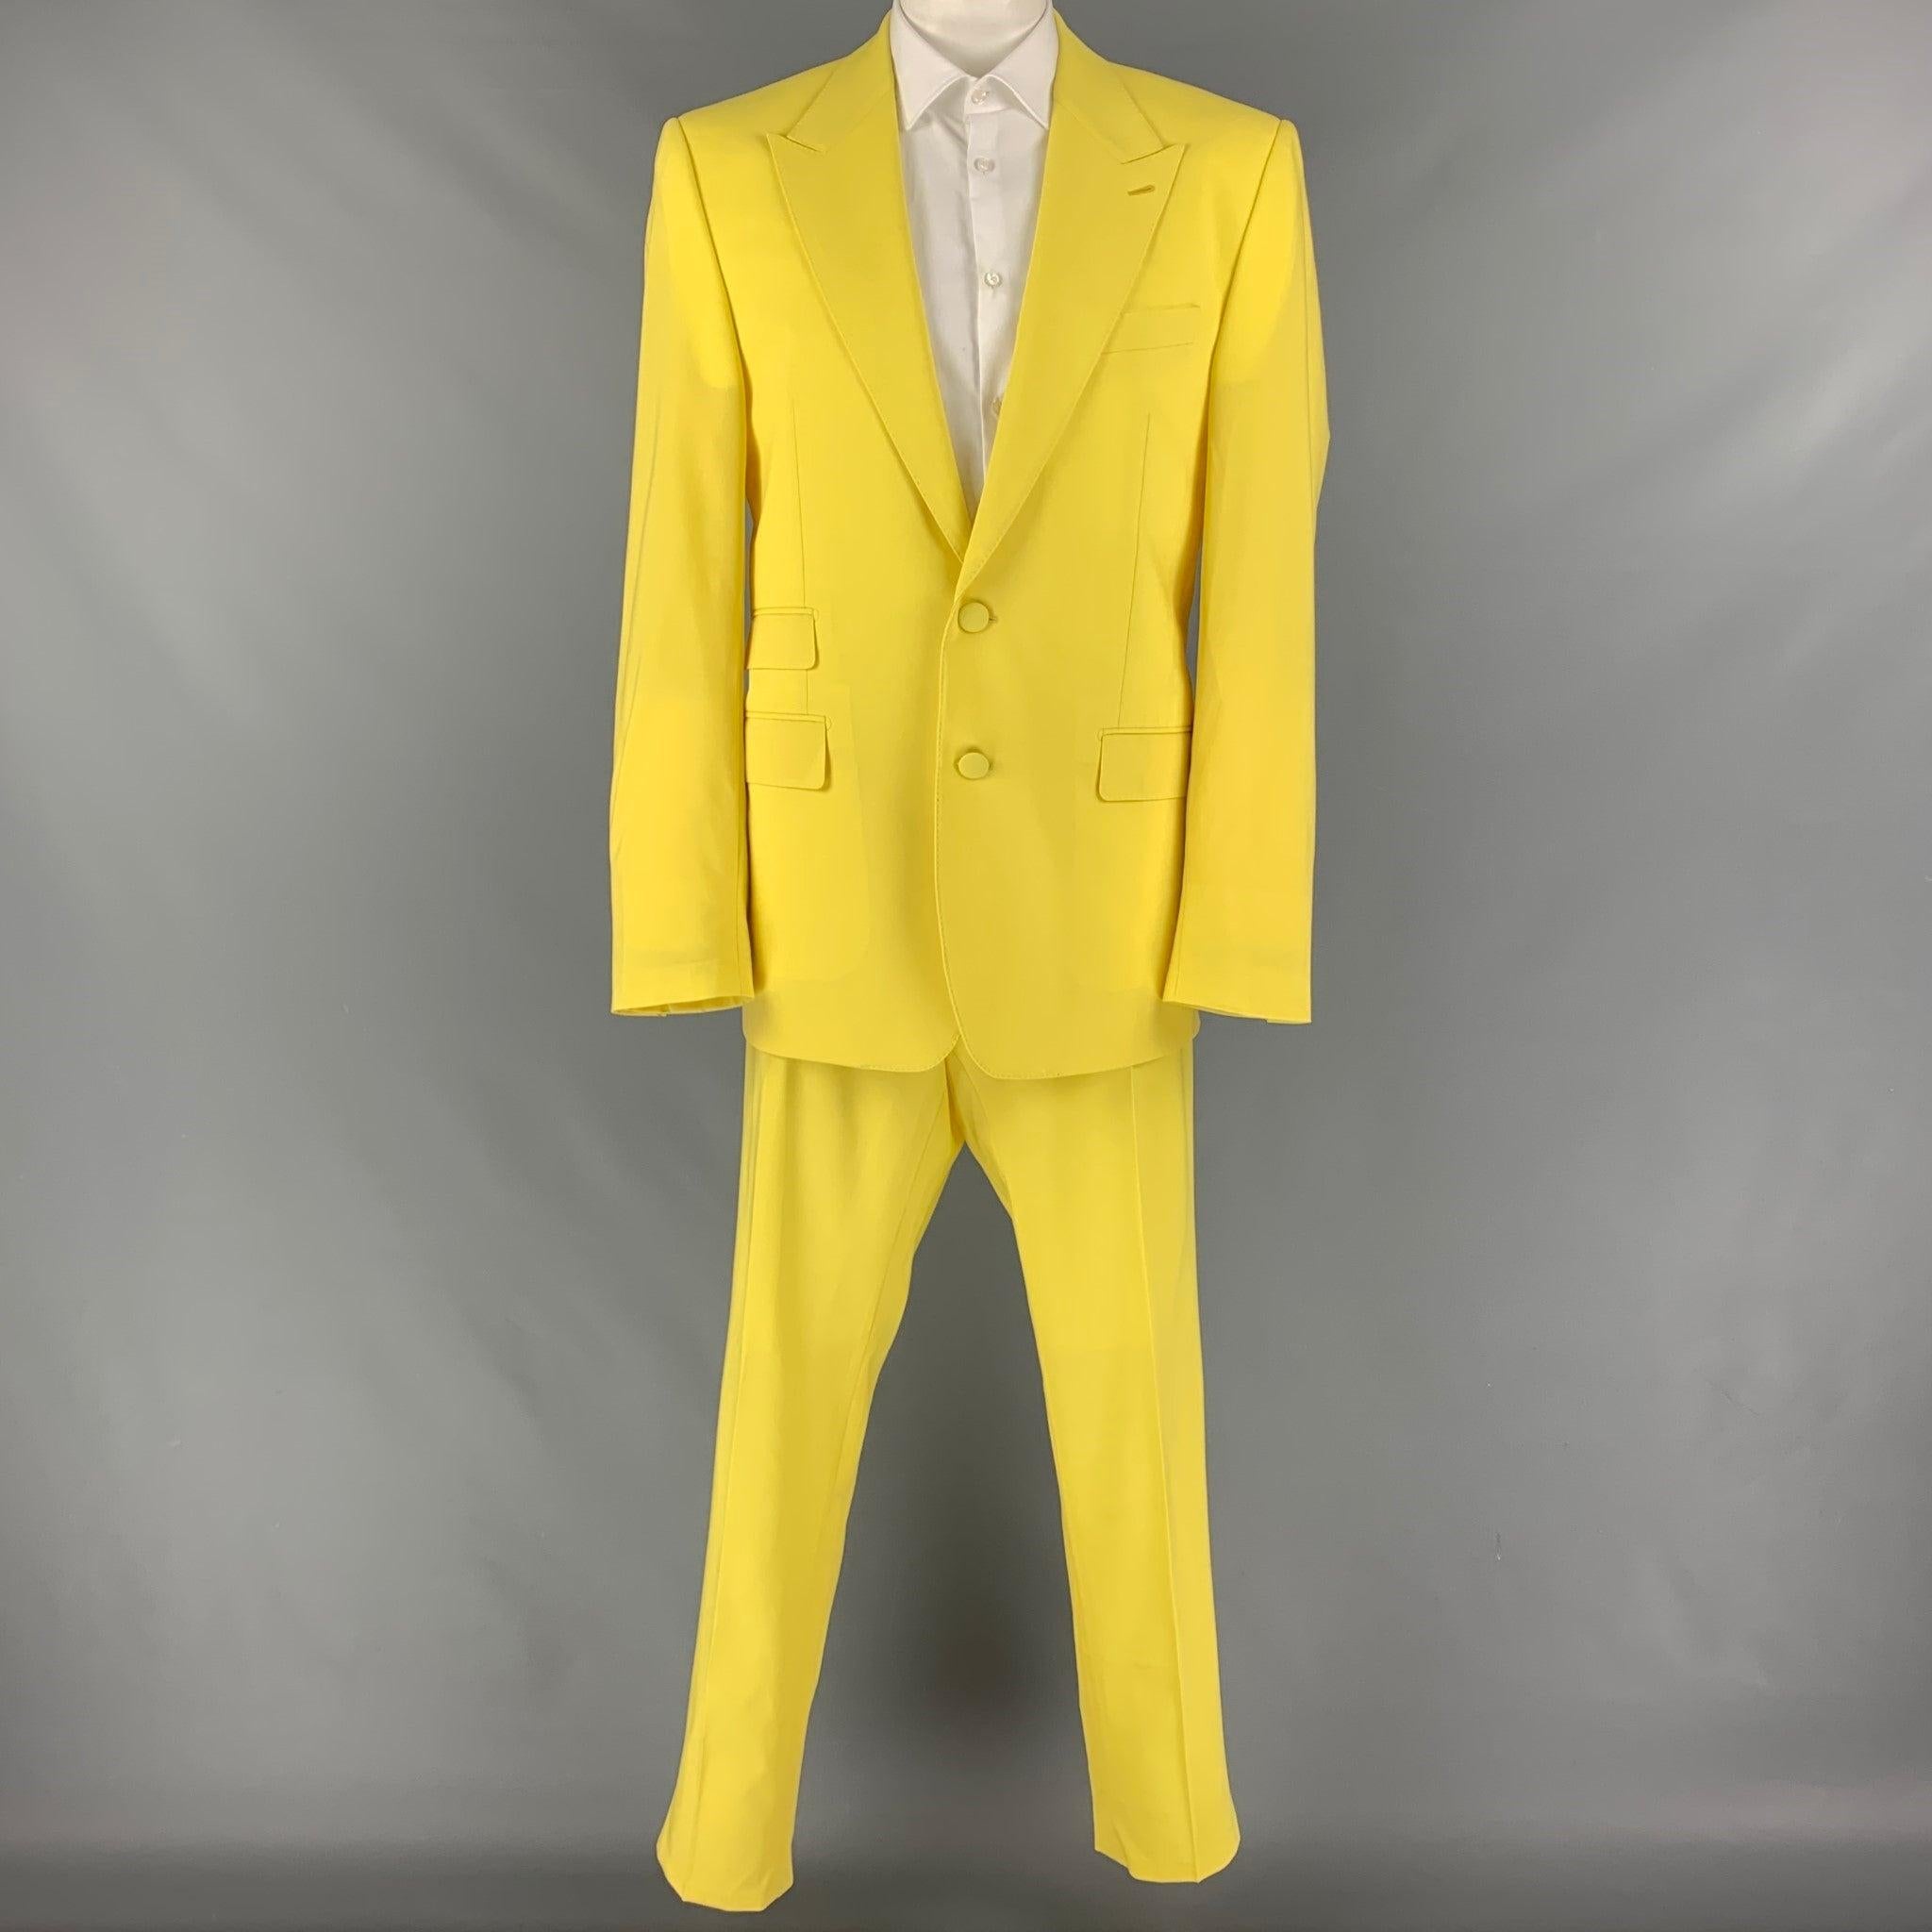 DOLCE & GABBANA
Le costume est en laine jaune avec une doublure complète et comprend un manteau de sport à double boutonnage avec un revers en pointe et un pantalon à plis assorti. Fabriquées en Italie. Nouveau avec des étiquettes.  

Marqué :   58